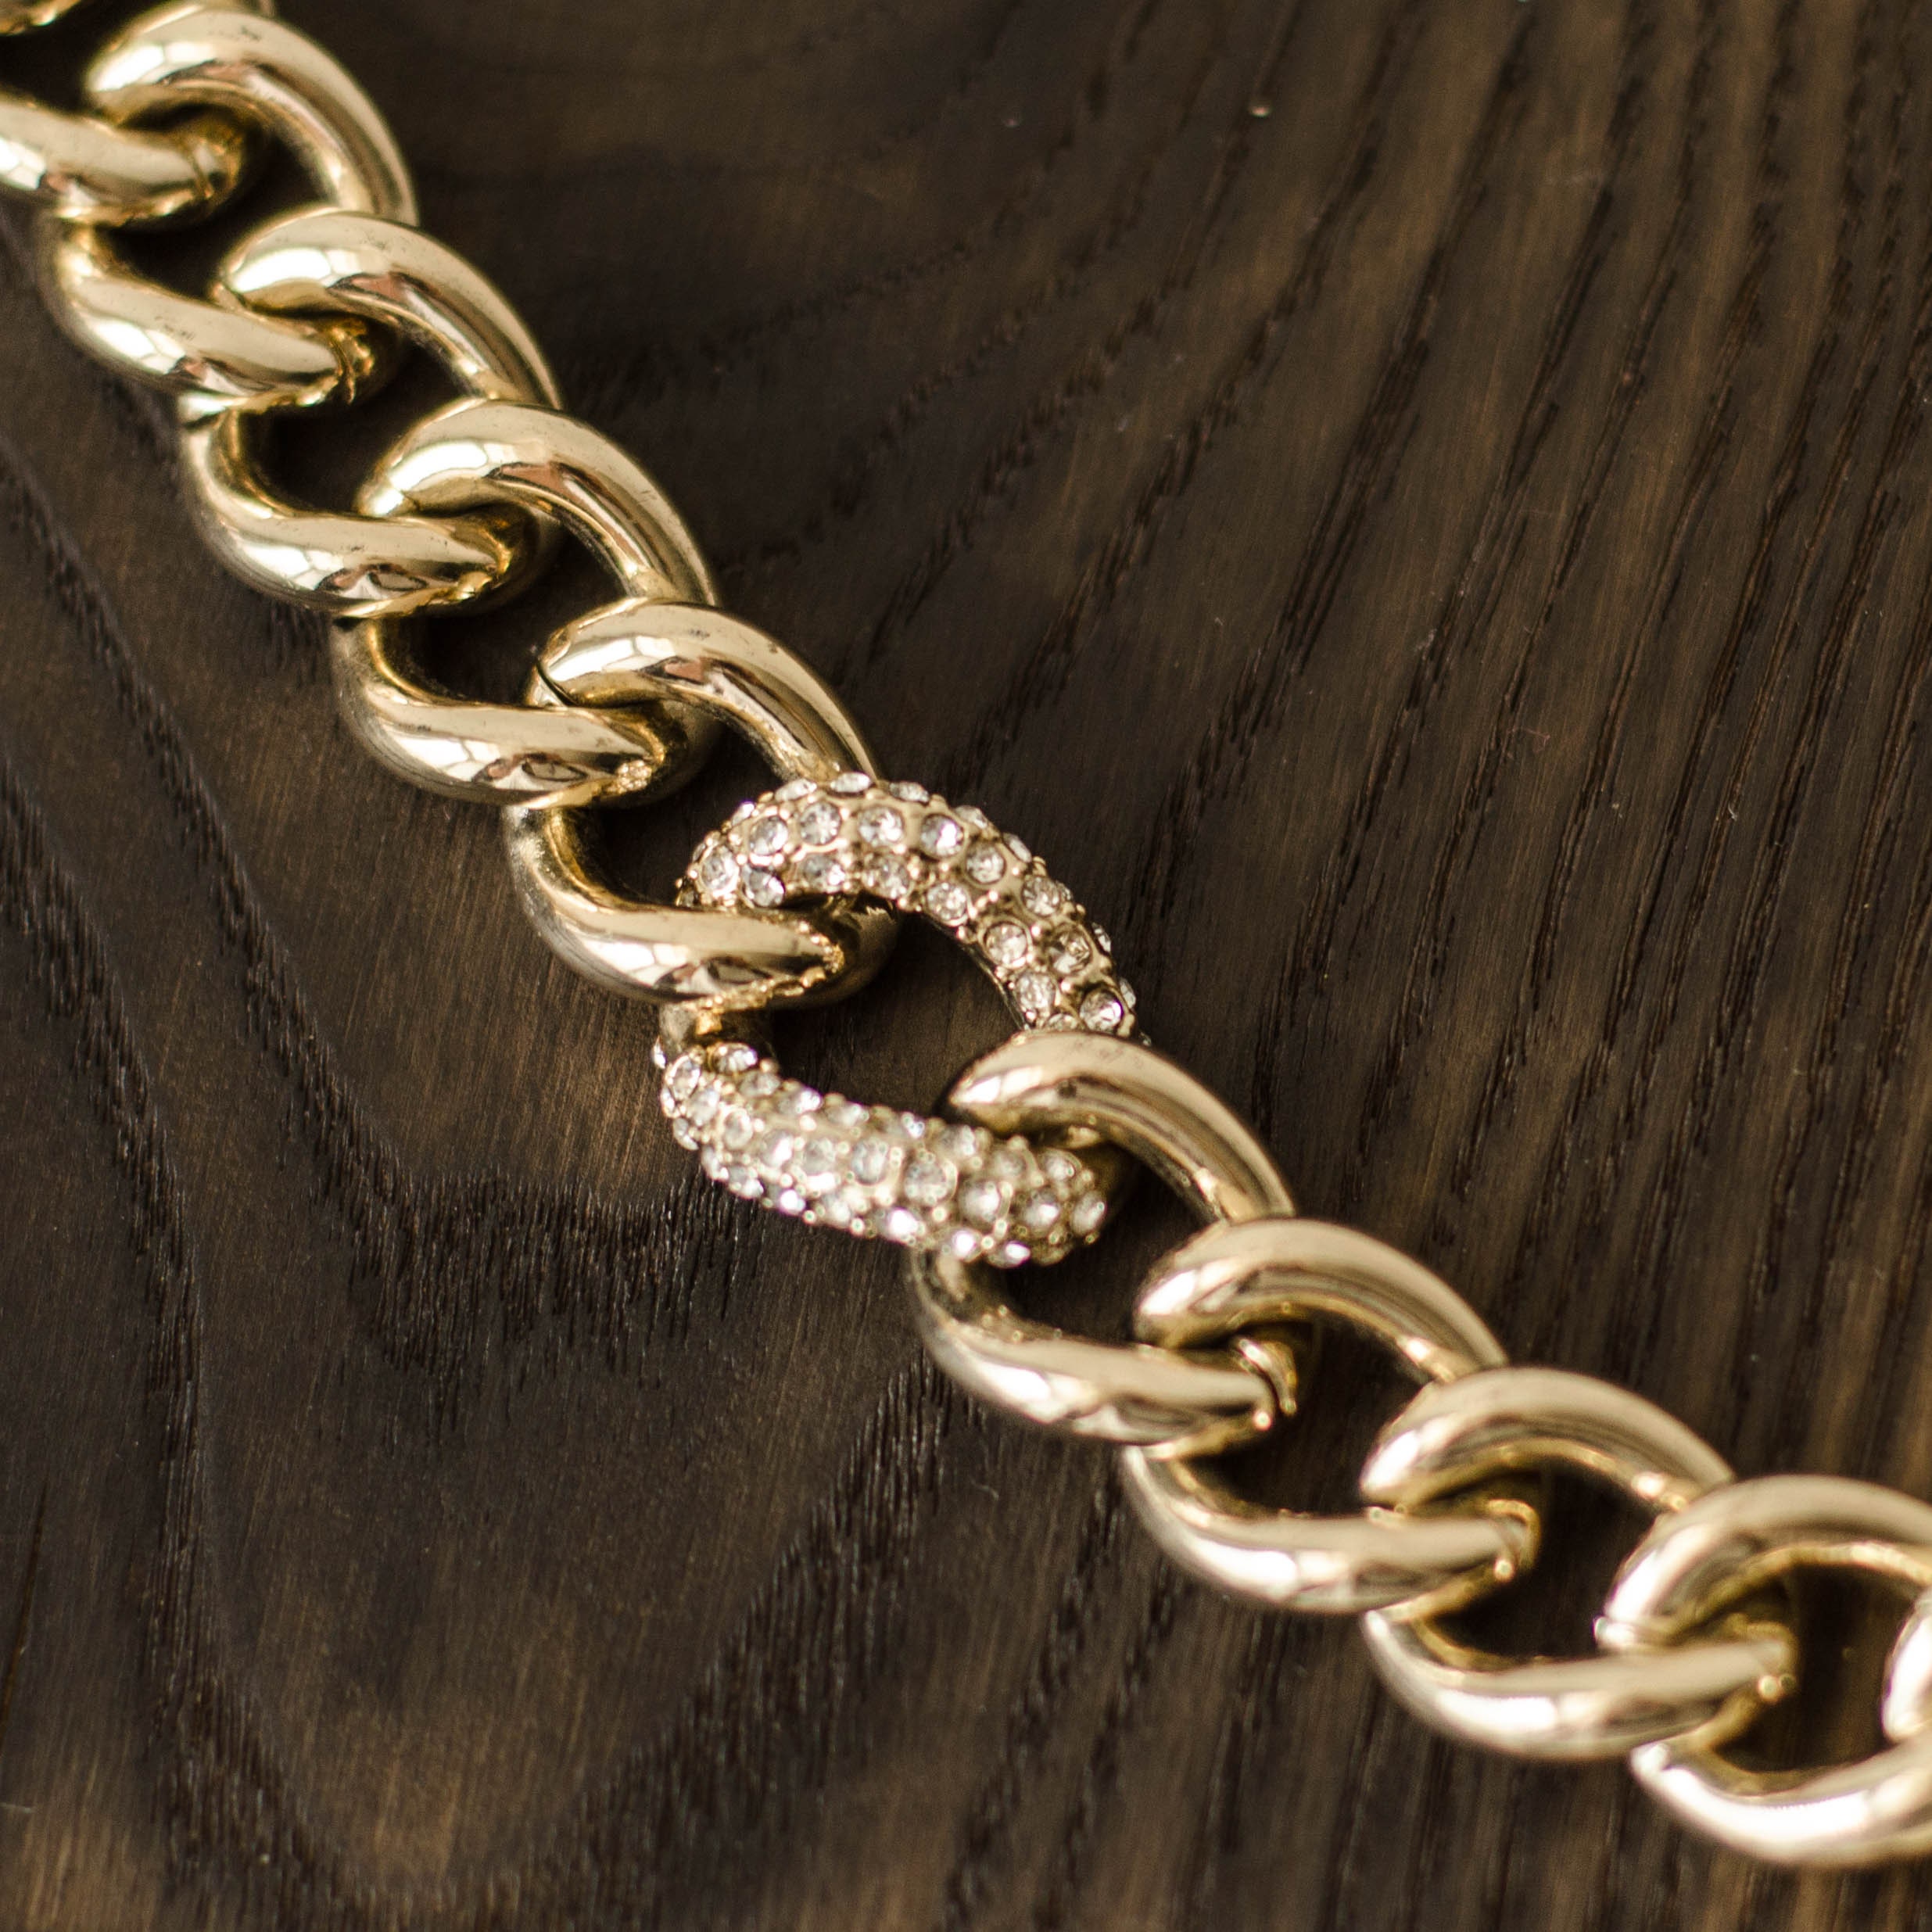 Curb chain bracelet by Victoria Secret Cuban link bracelet | Etsy